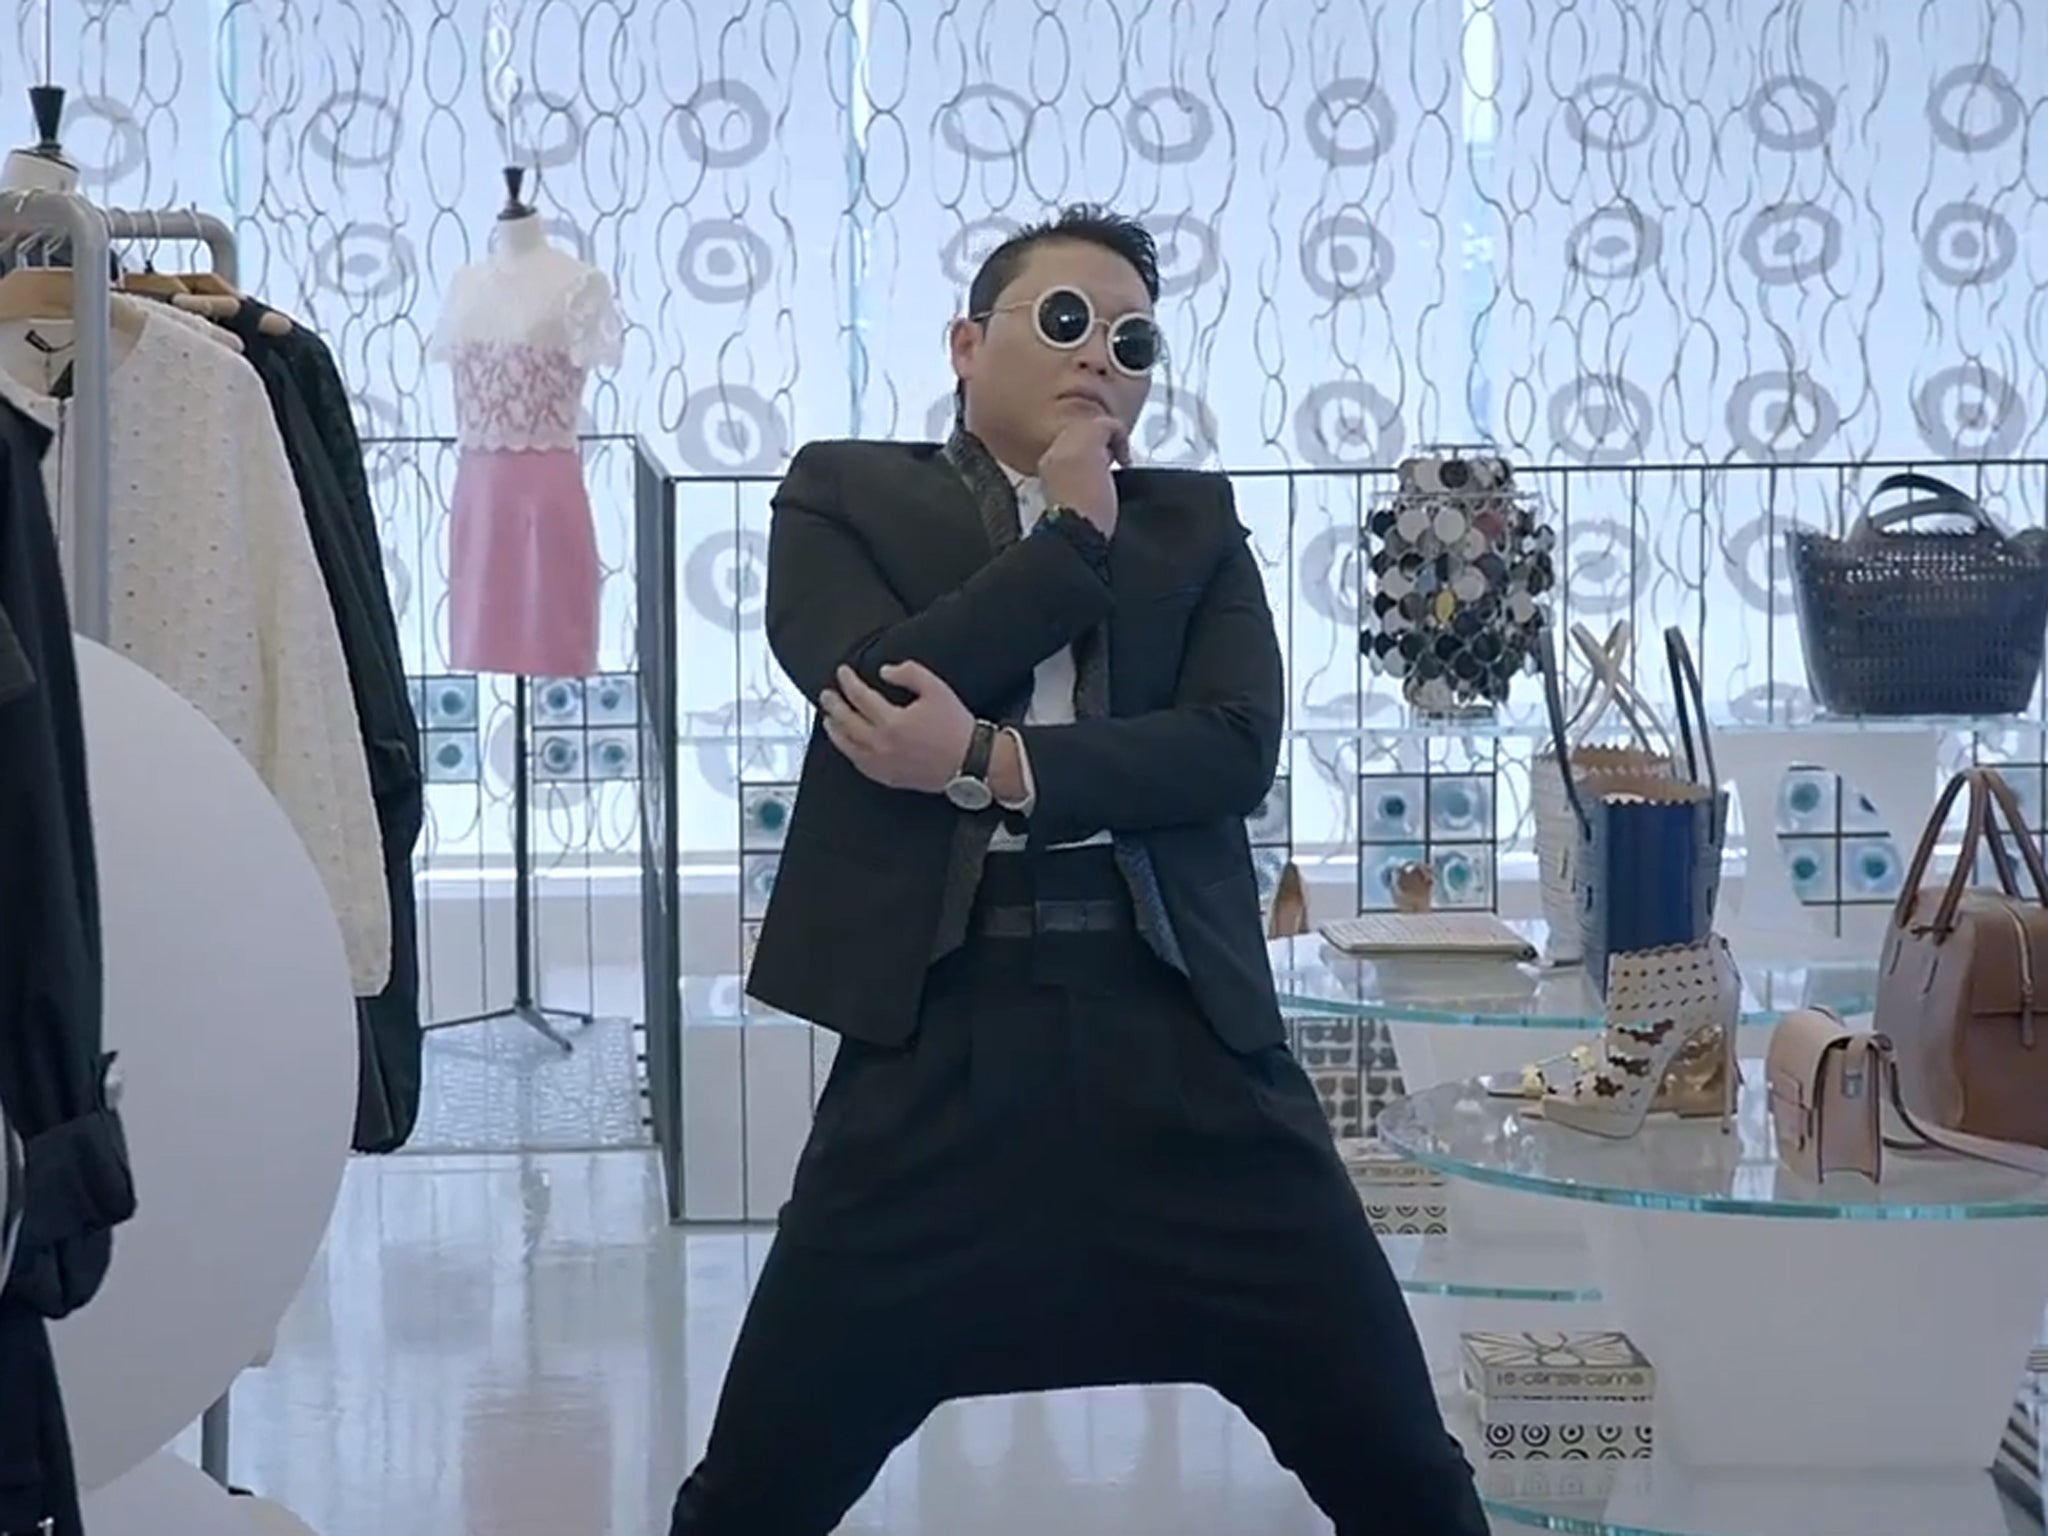 Psy in 'Gangnam Style' follow-up video 'Gentleman'